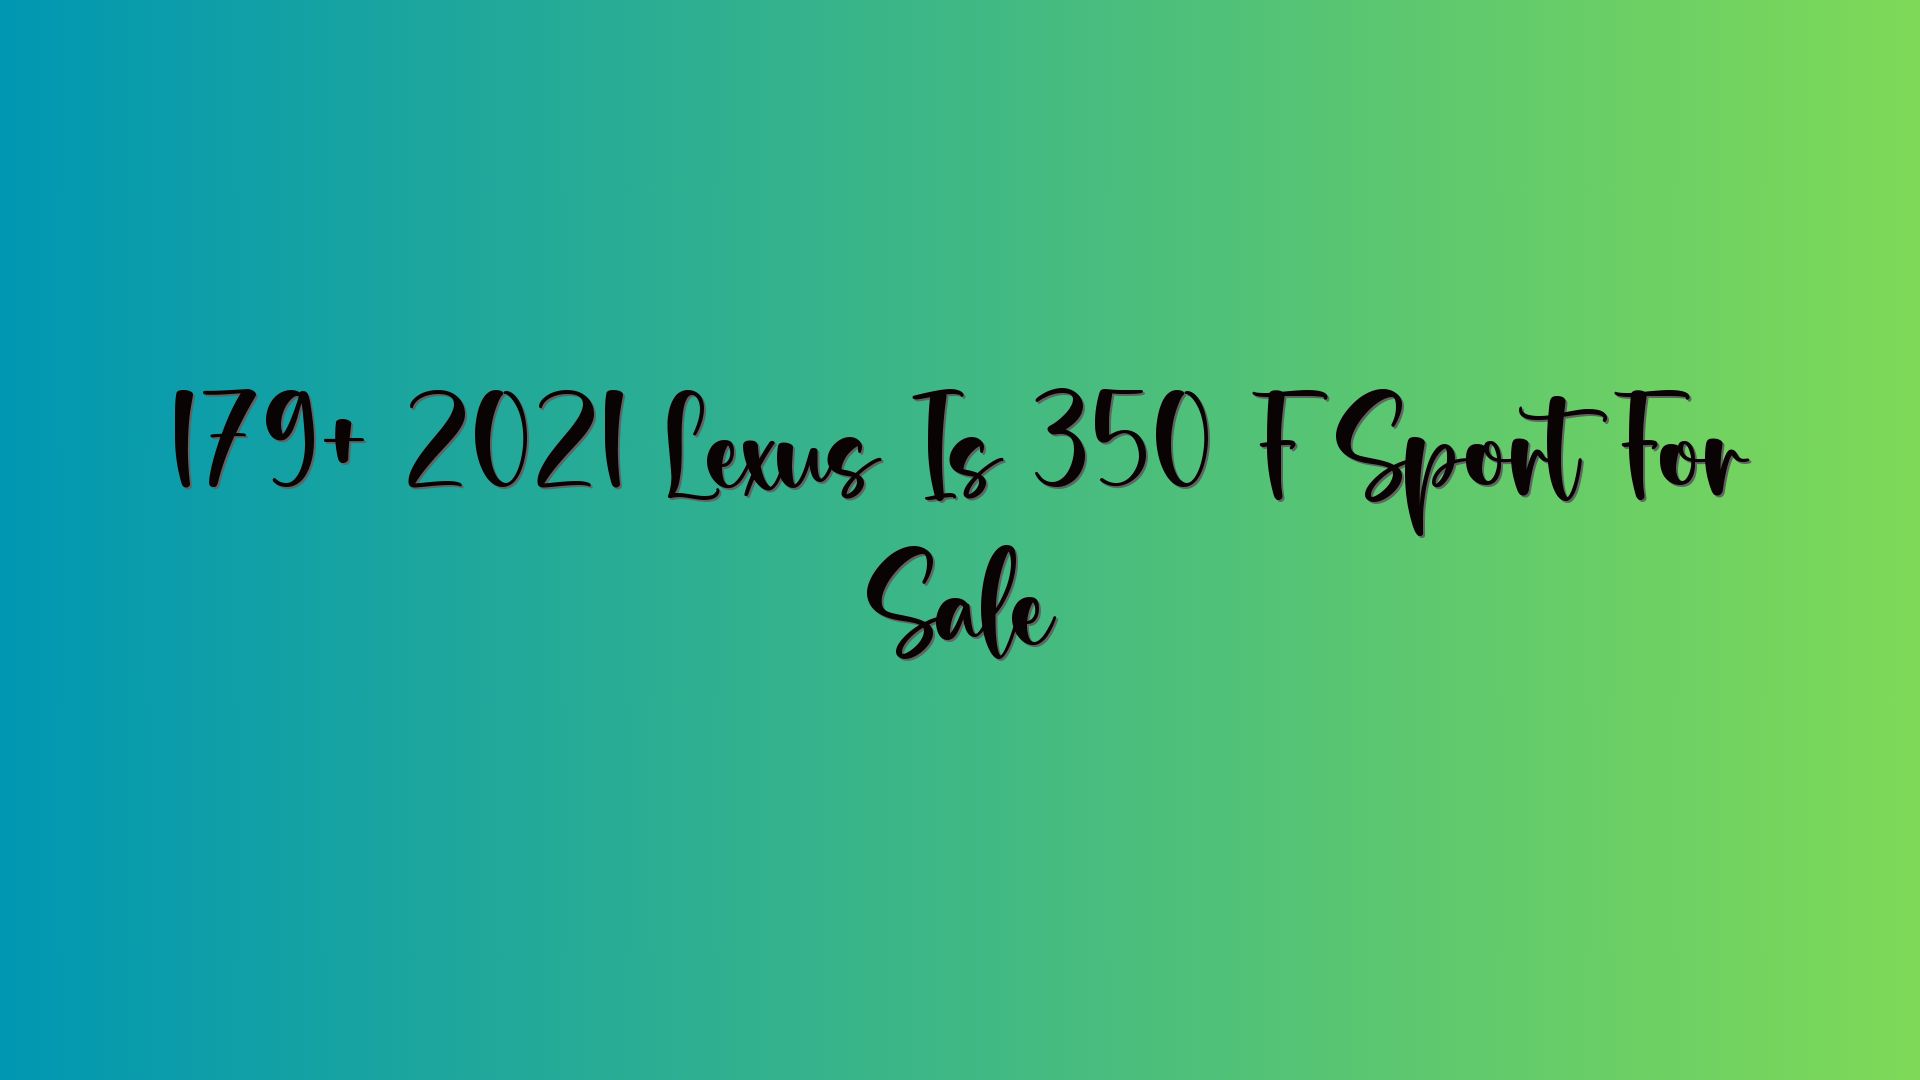 179+ 2021 Lexus Is 350 F Sport For Sale